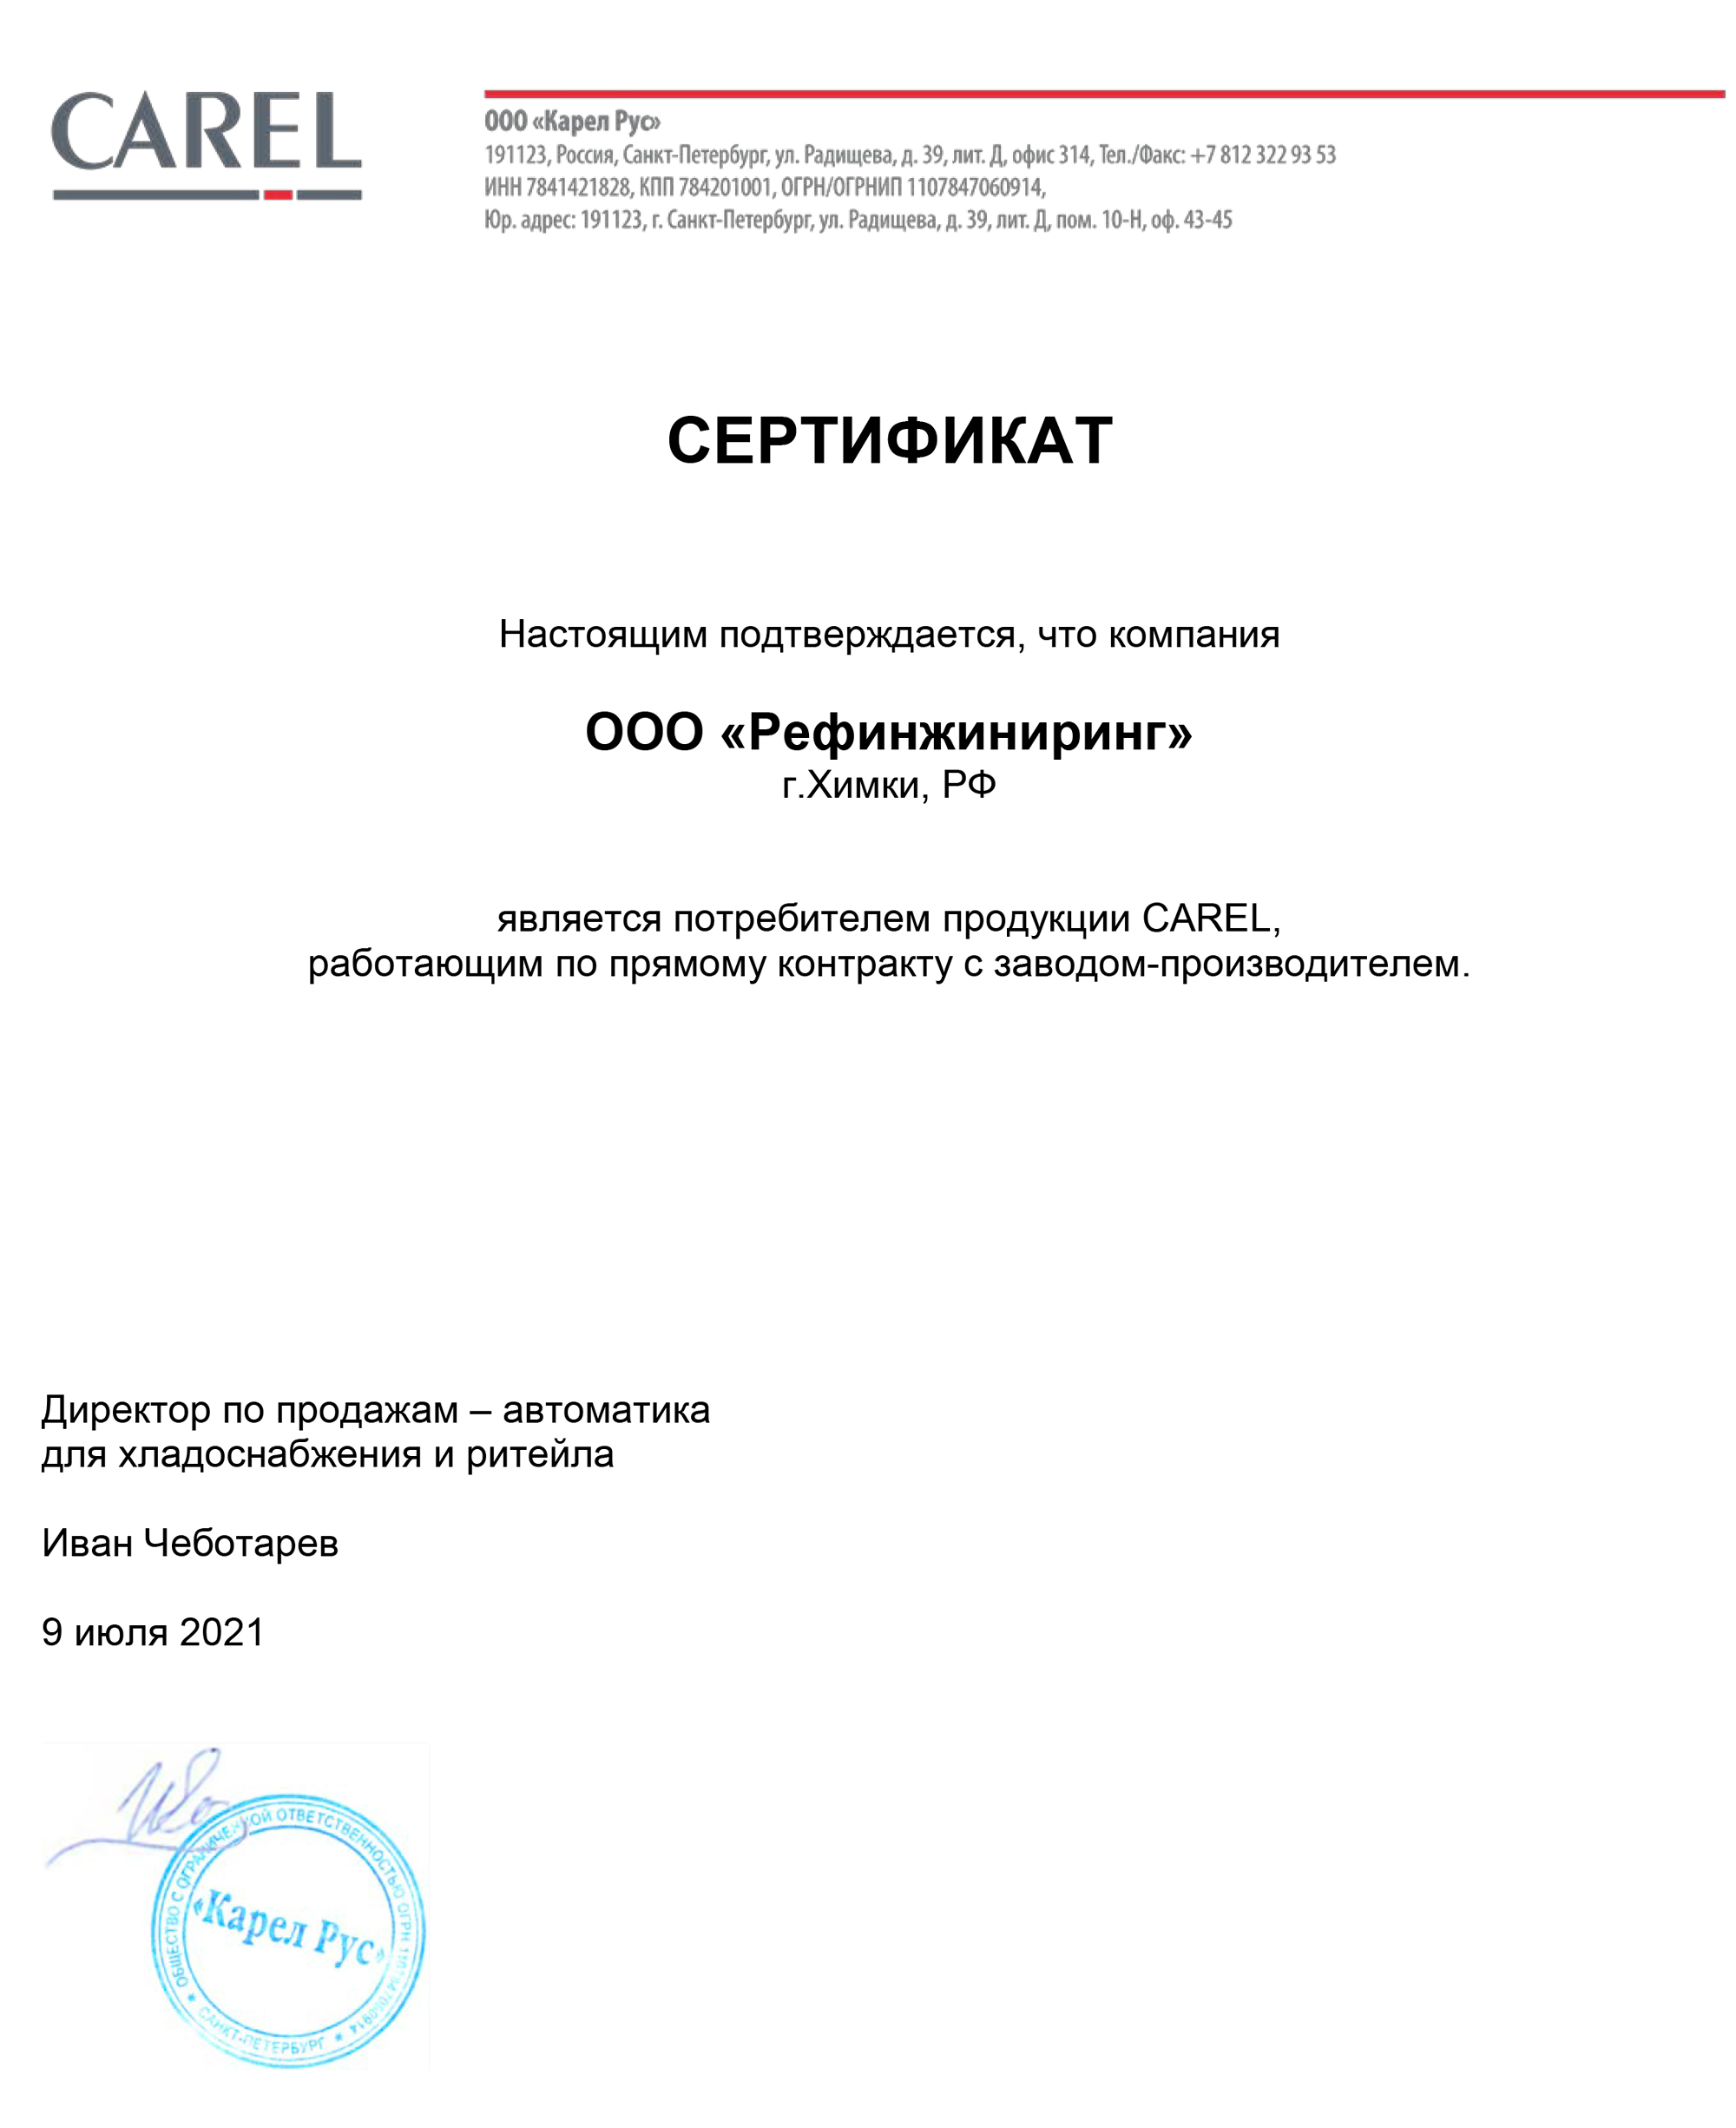 Сертификат о партнерстве компании Рефинжиниринг с Carel